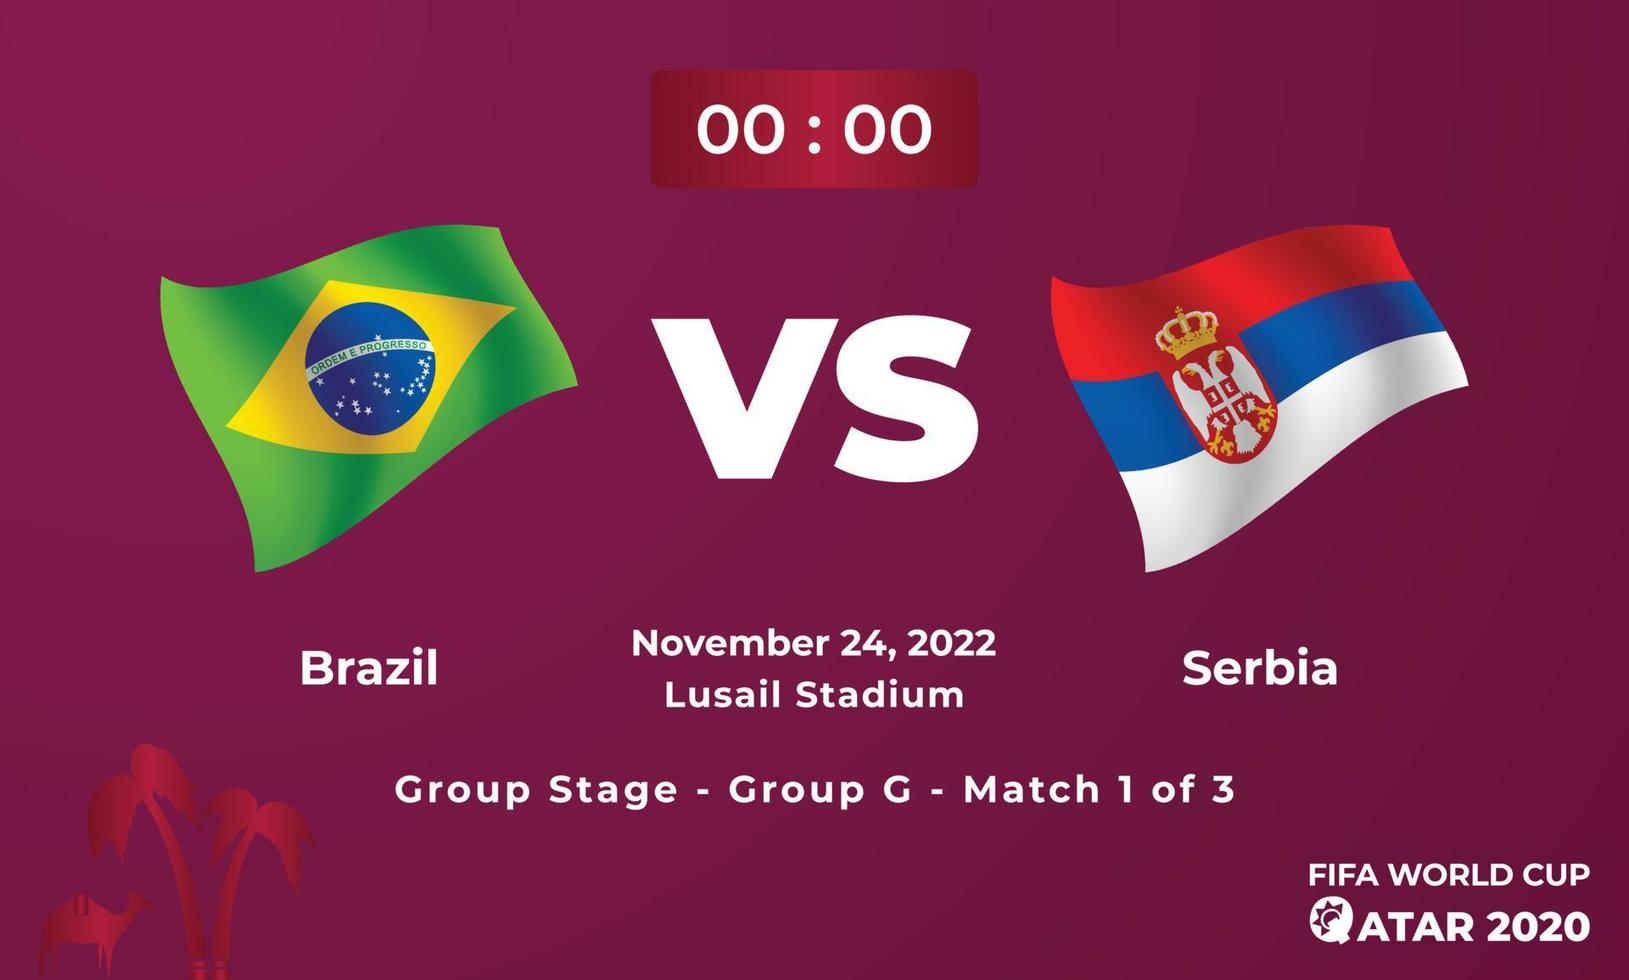 plantilla de partido de fútbol brasil vs serbia, copa mundial de la fifa en qatar 2022 vector